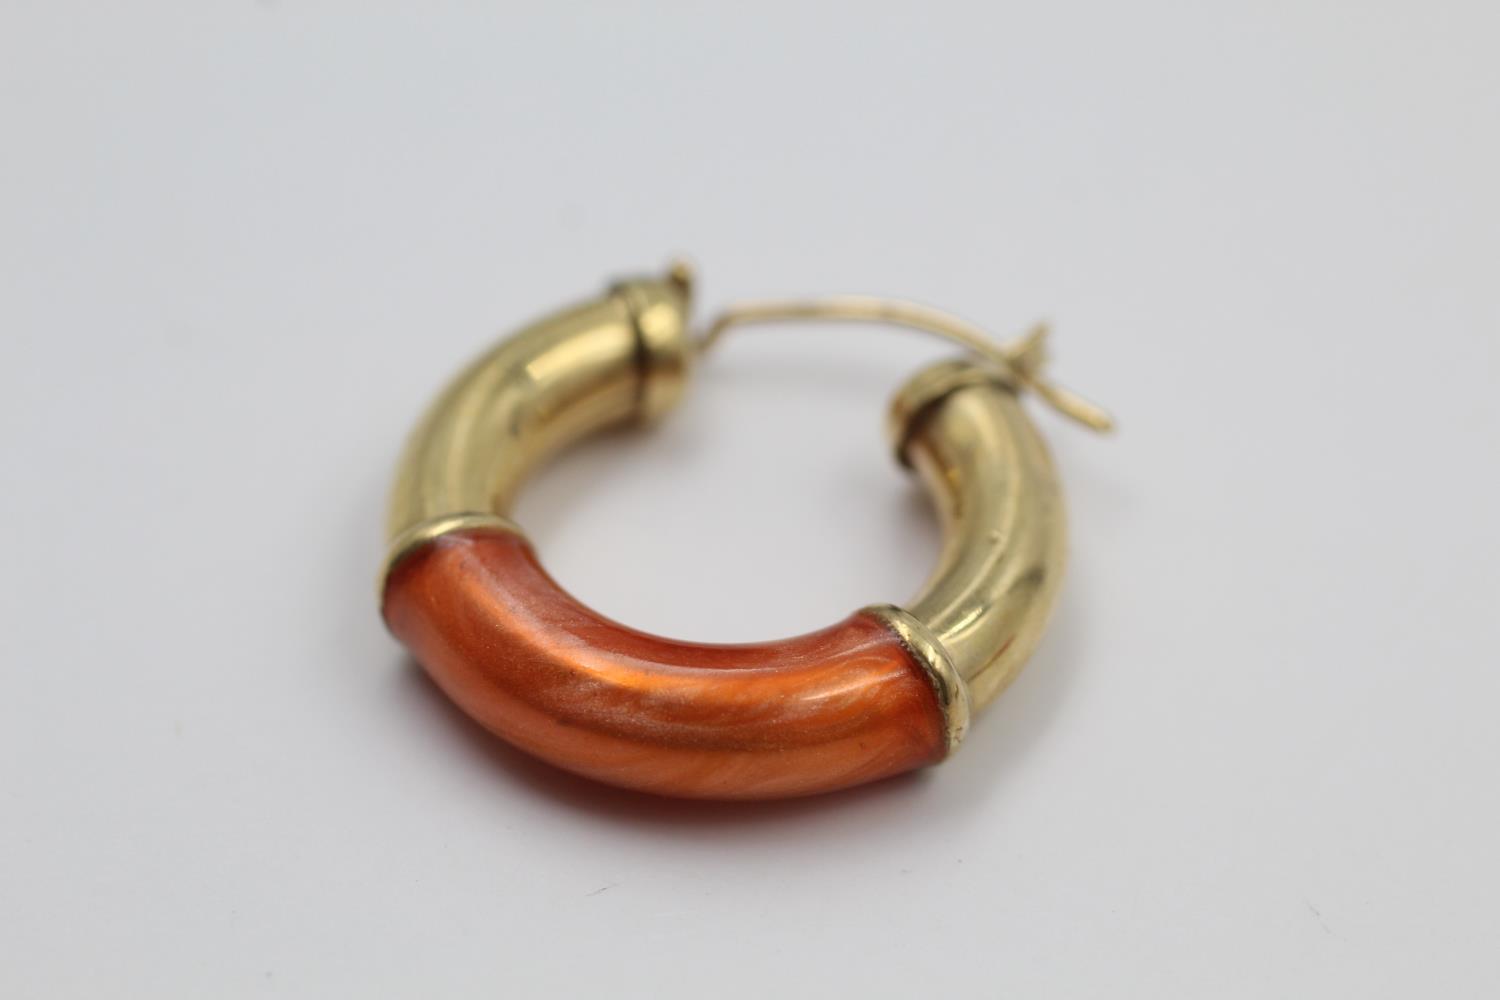 9ct gold enamel hoop earrings 4.1 grams gross - Image 4 of 5